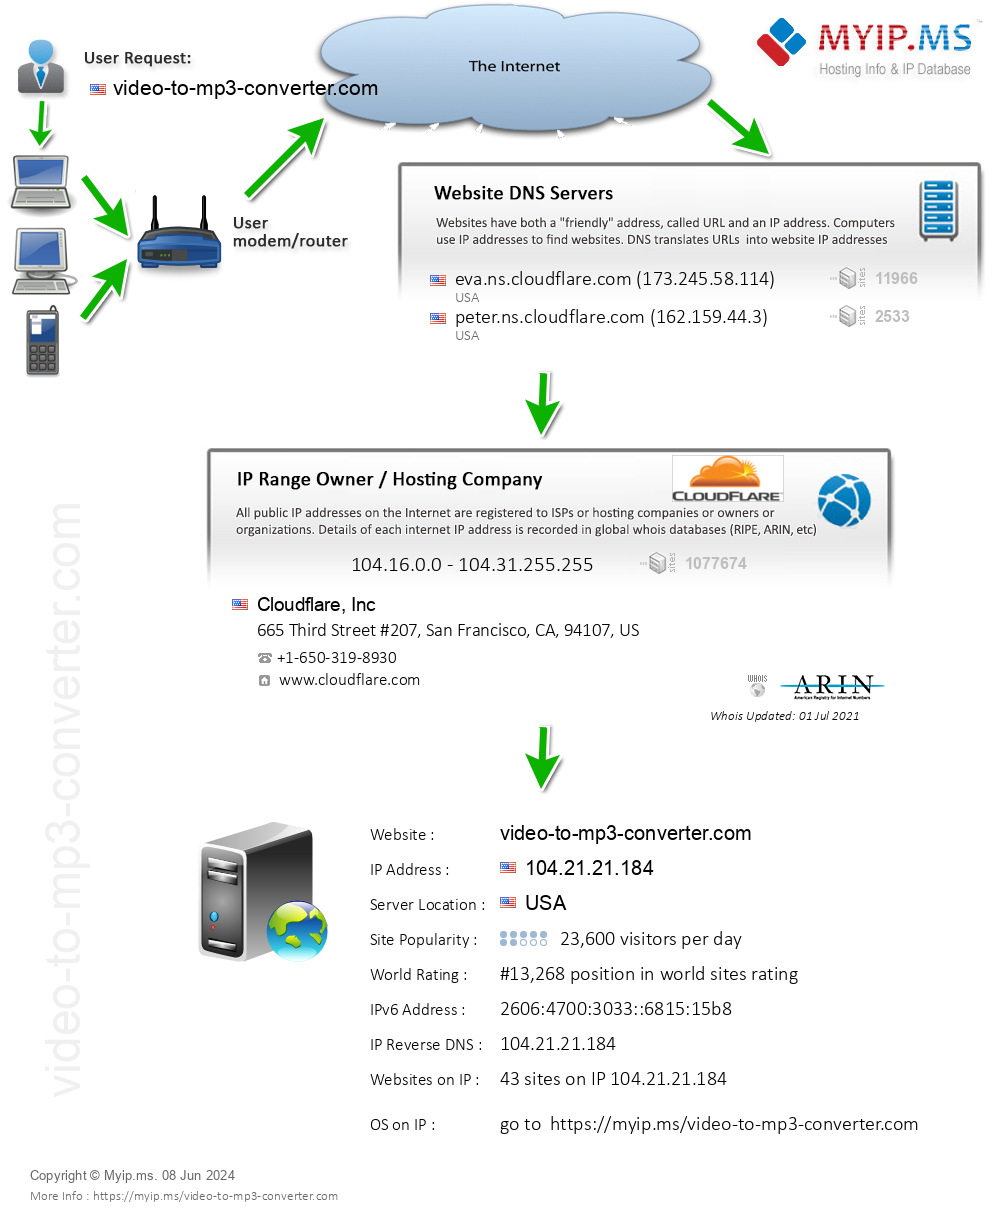 Video-to-mp3-converter.com - Website Hosting Visual IP Diagram